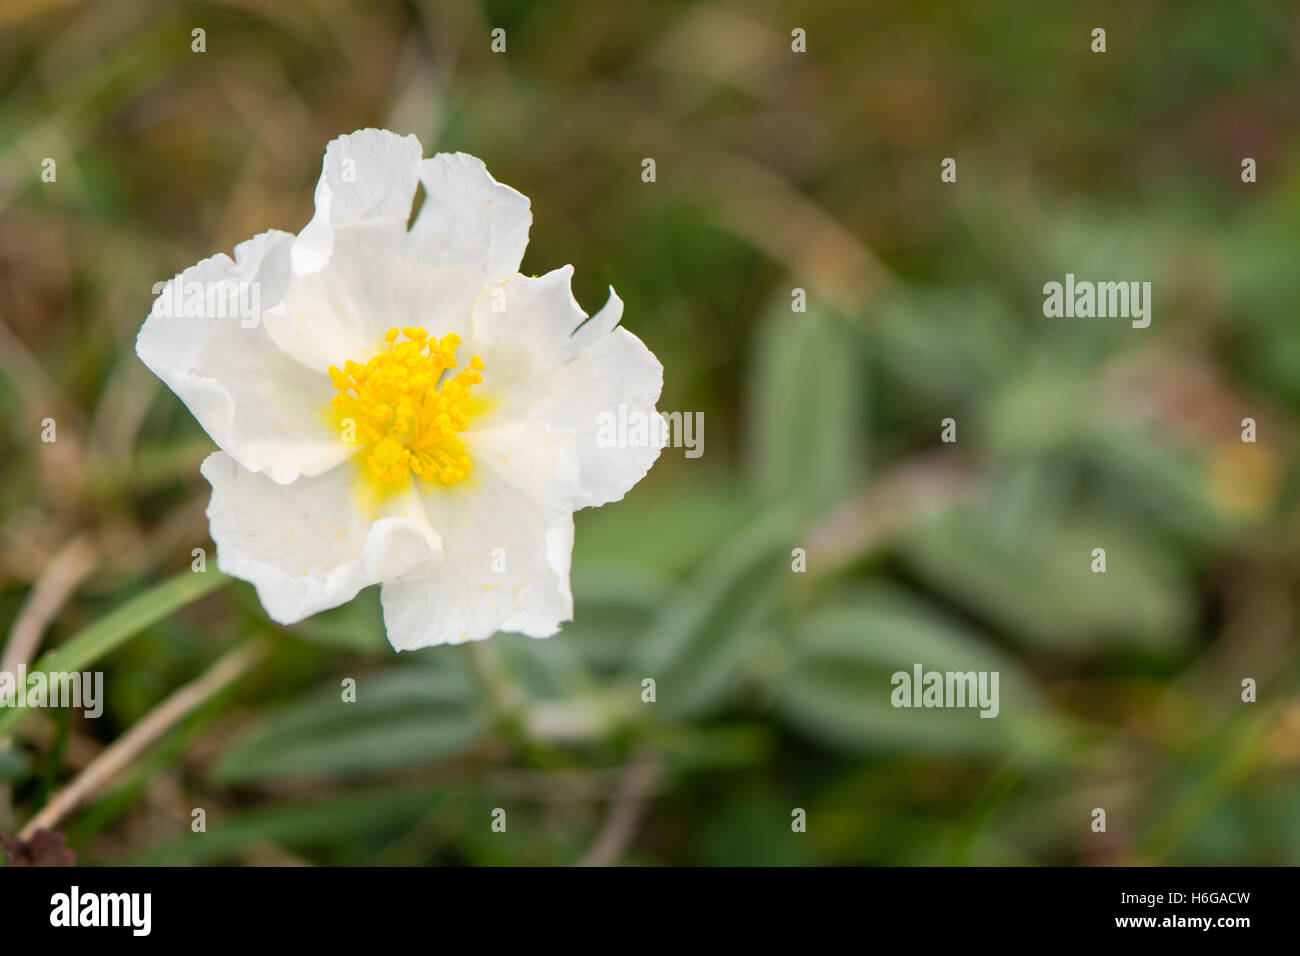 Weißer Rock rose (Helianthemum Apenninum) Blume. Seltene zarte weiße Blume dieser niedrig wachsende Pflanze in der Familie Cistaceae Stockfoto